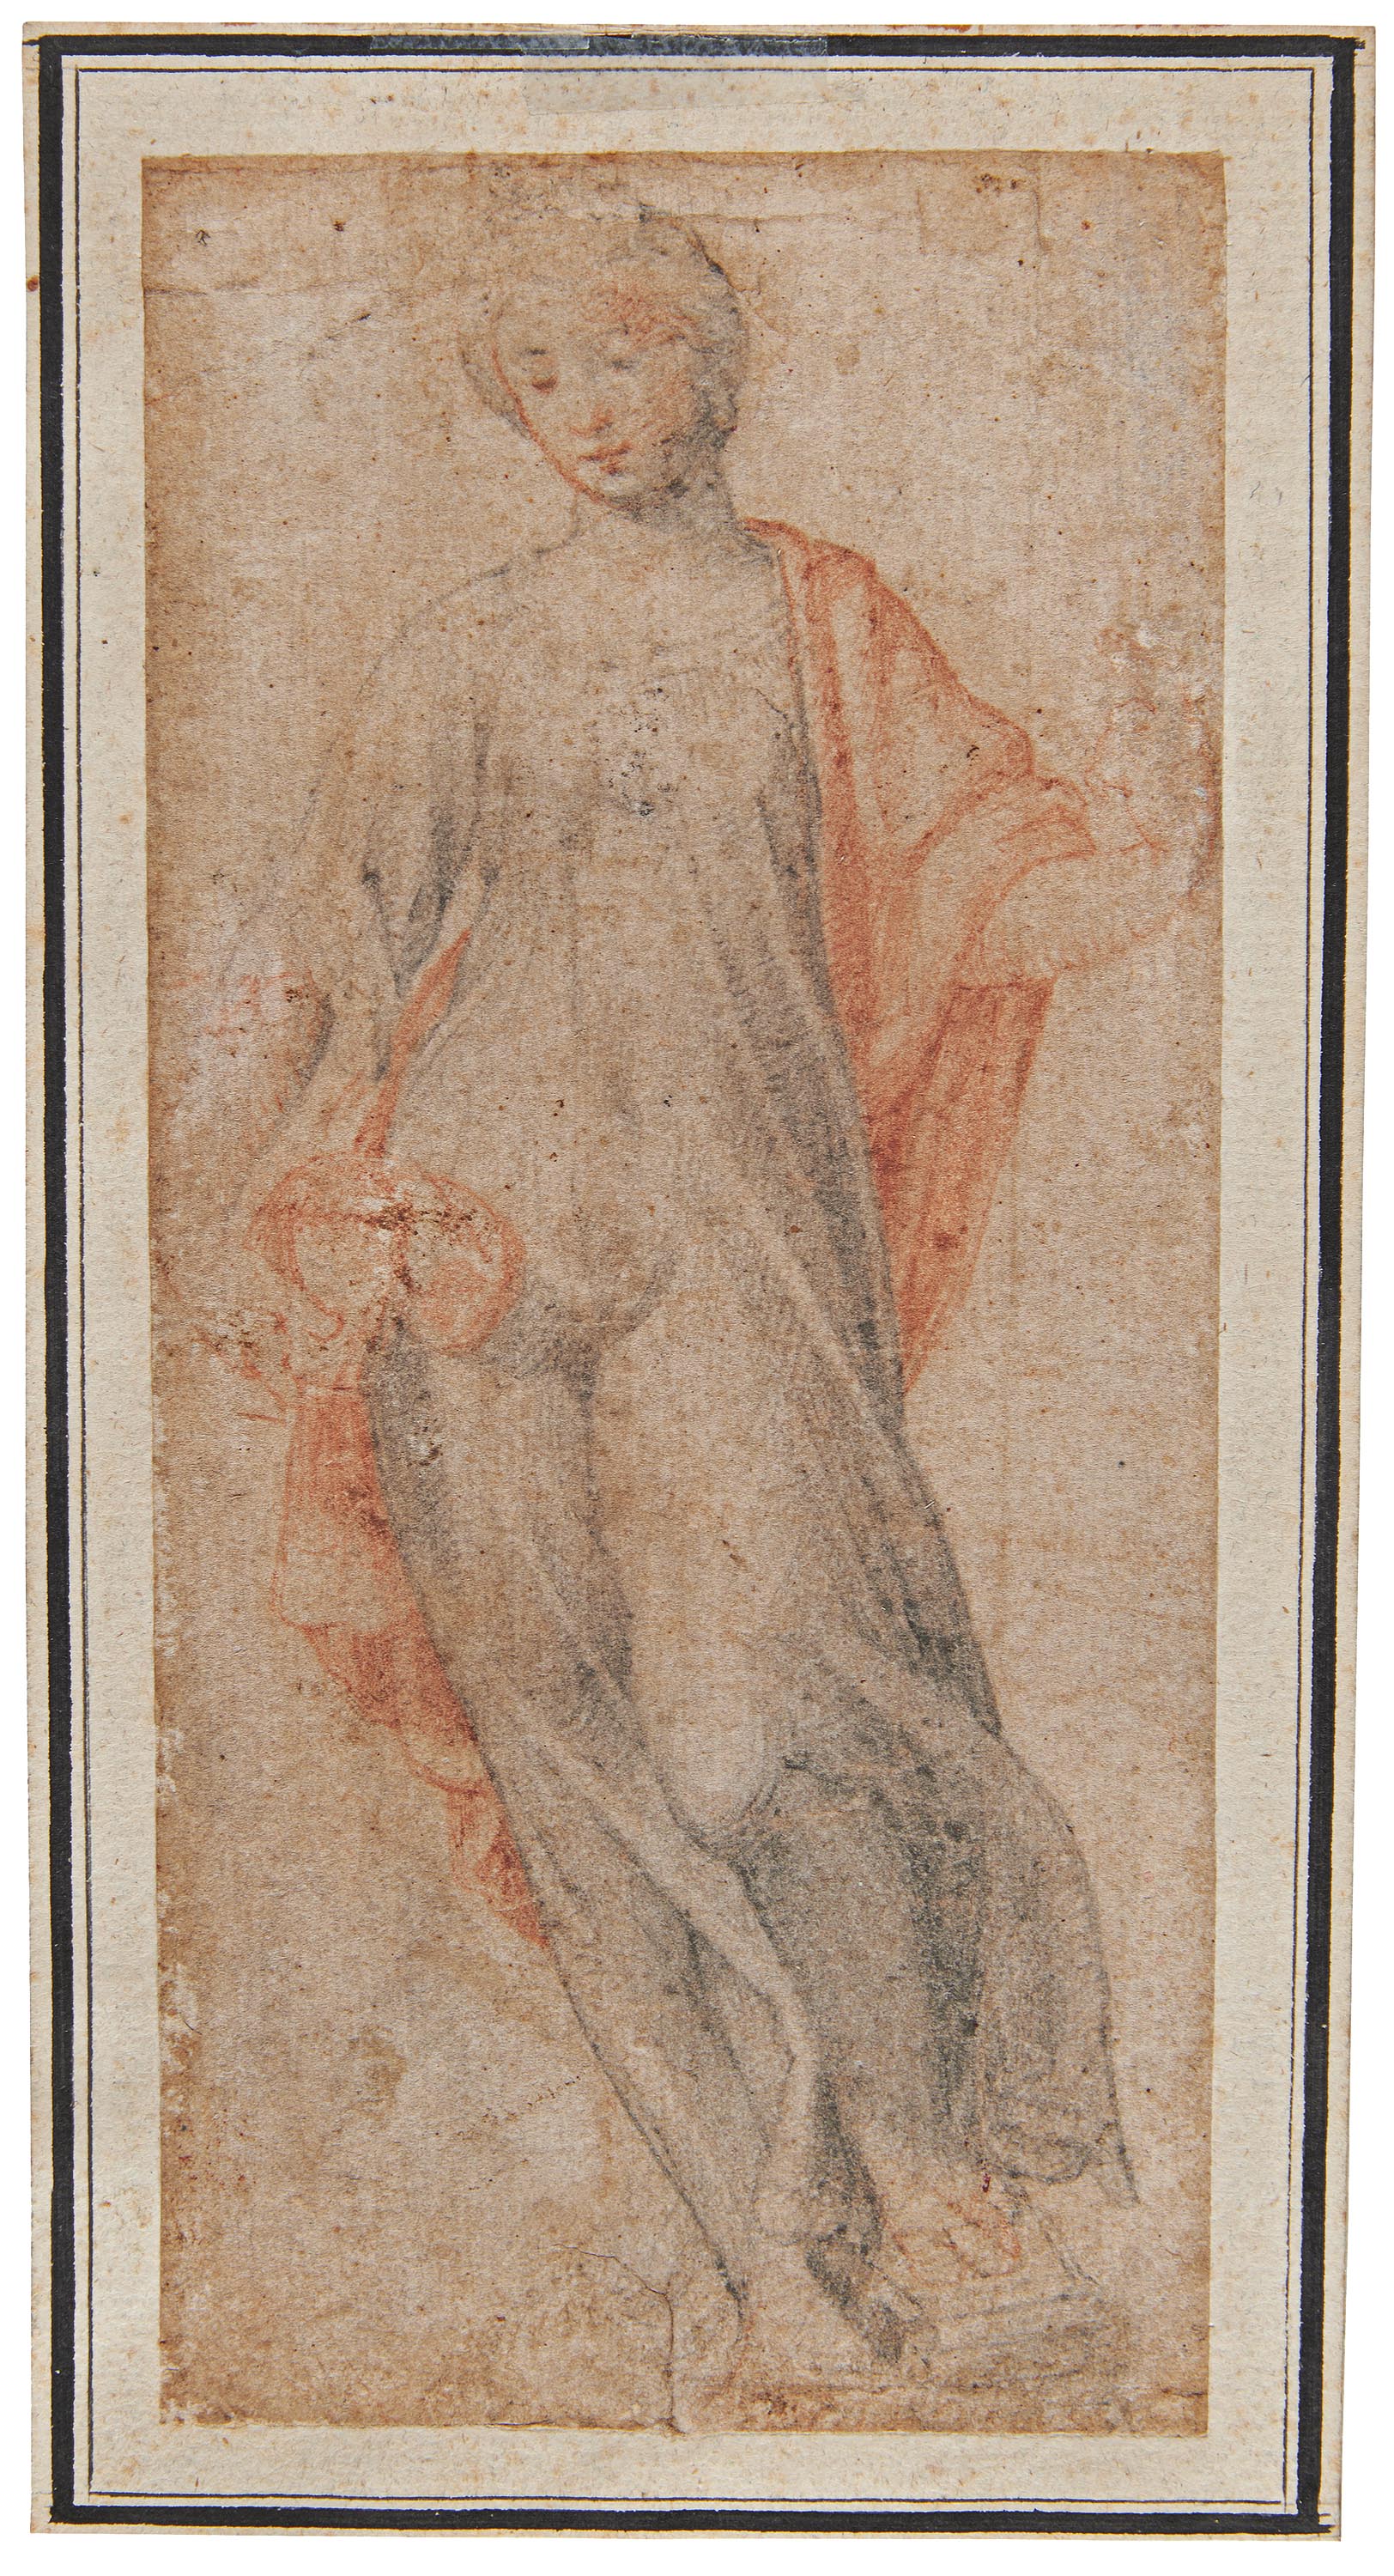 Florentiner Schule - Allegorische Figur, 70016-2, Van Ham Kunstauktionen